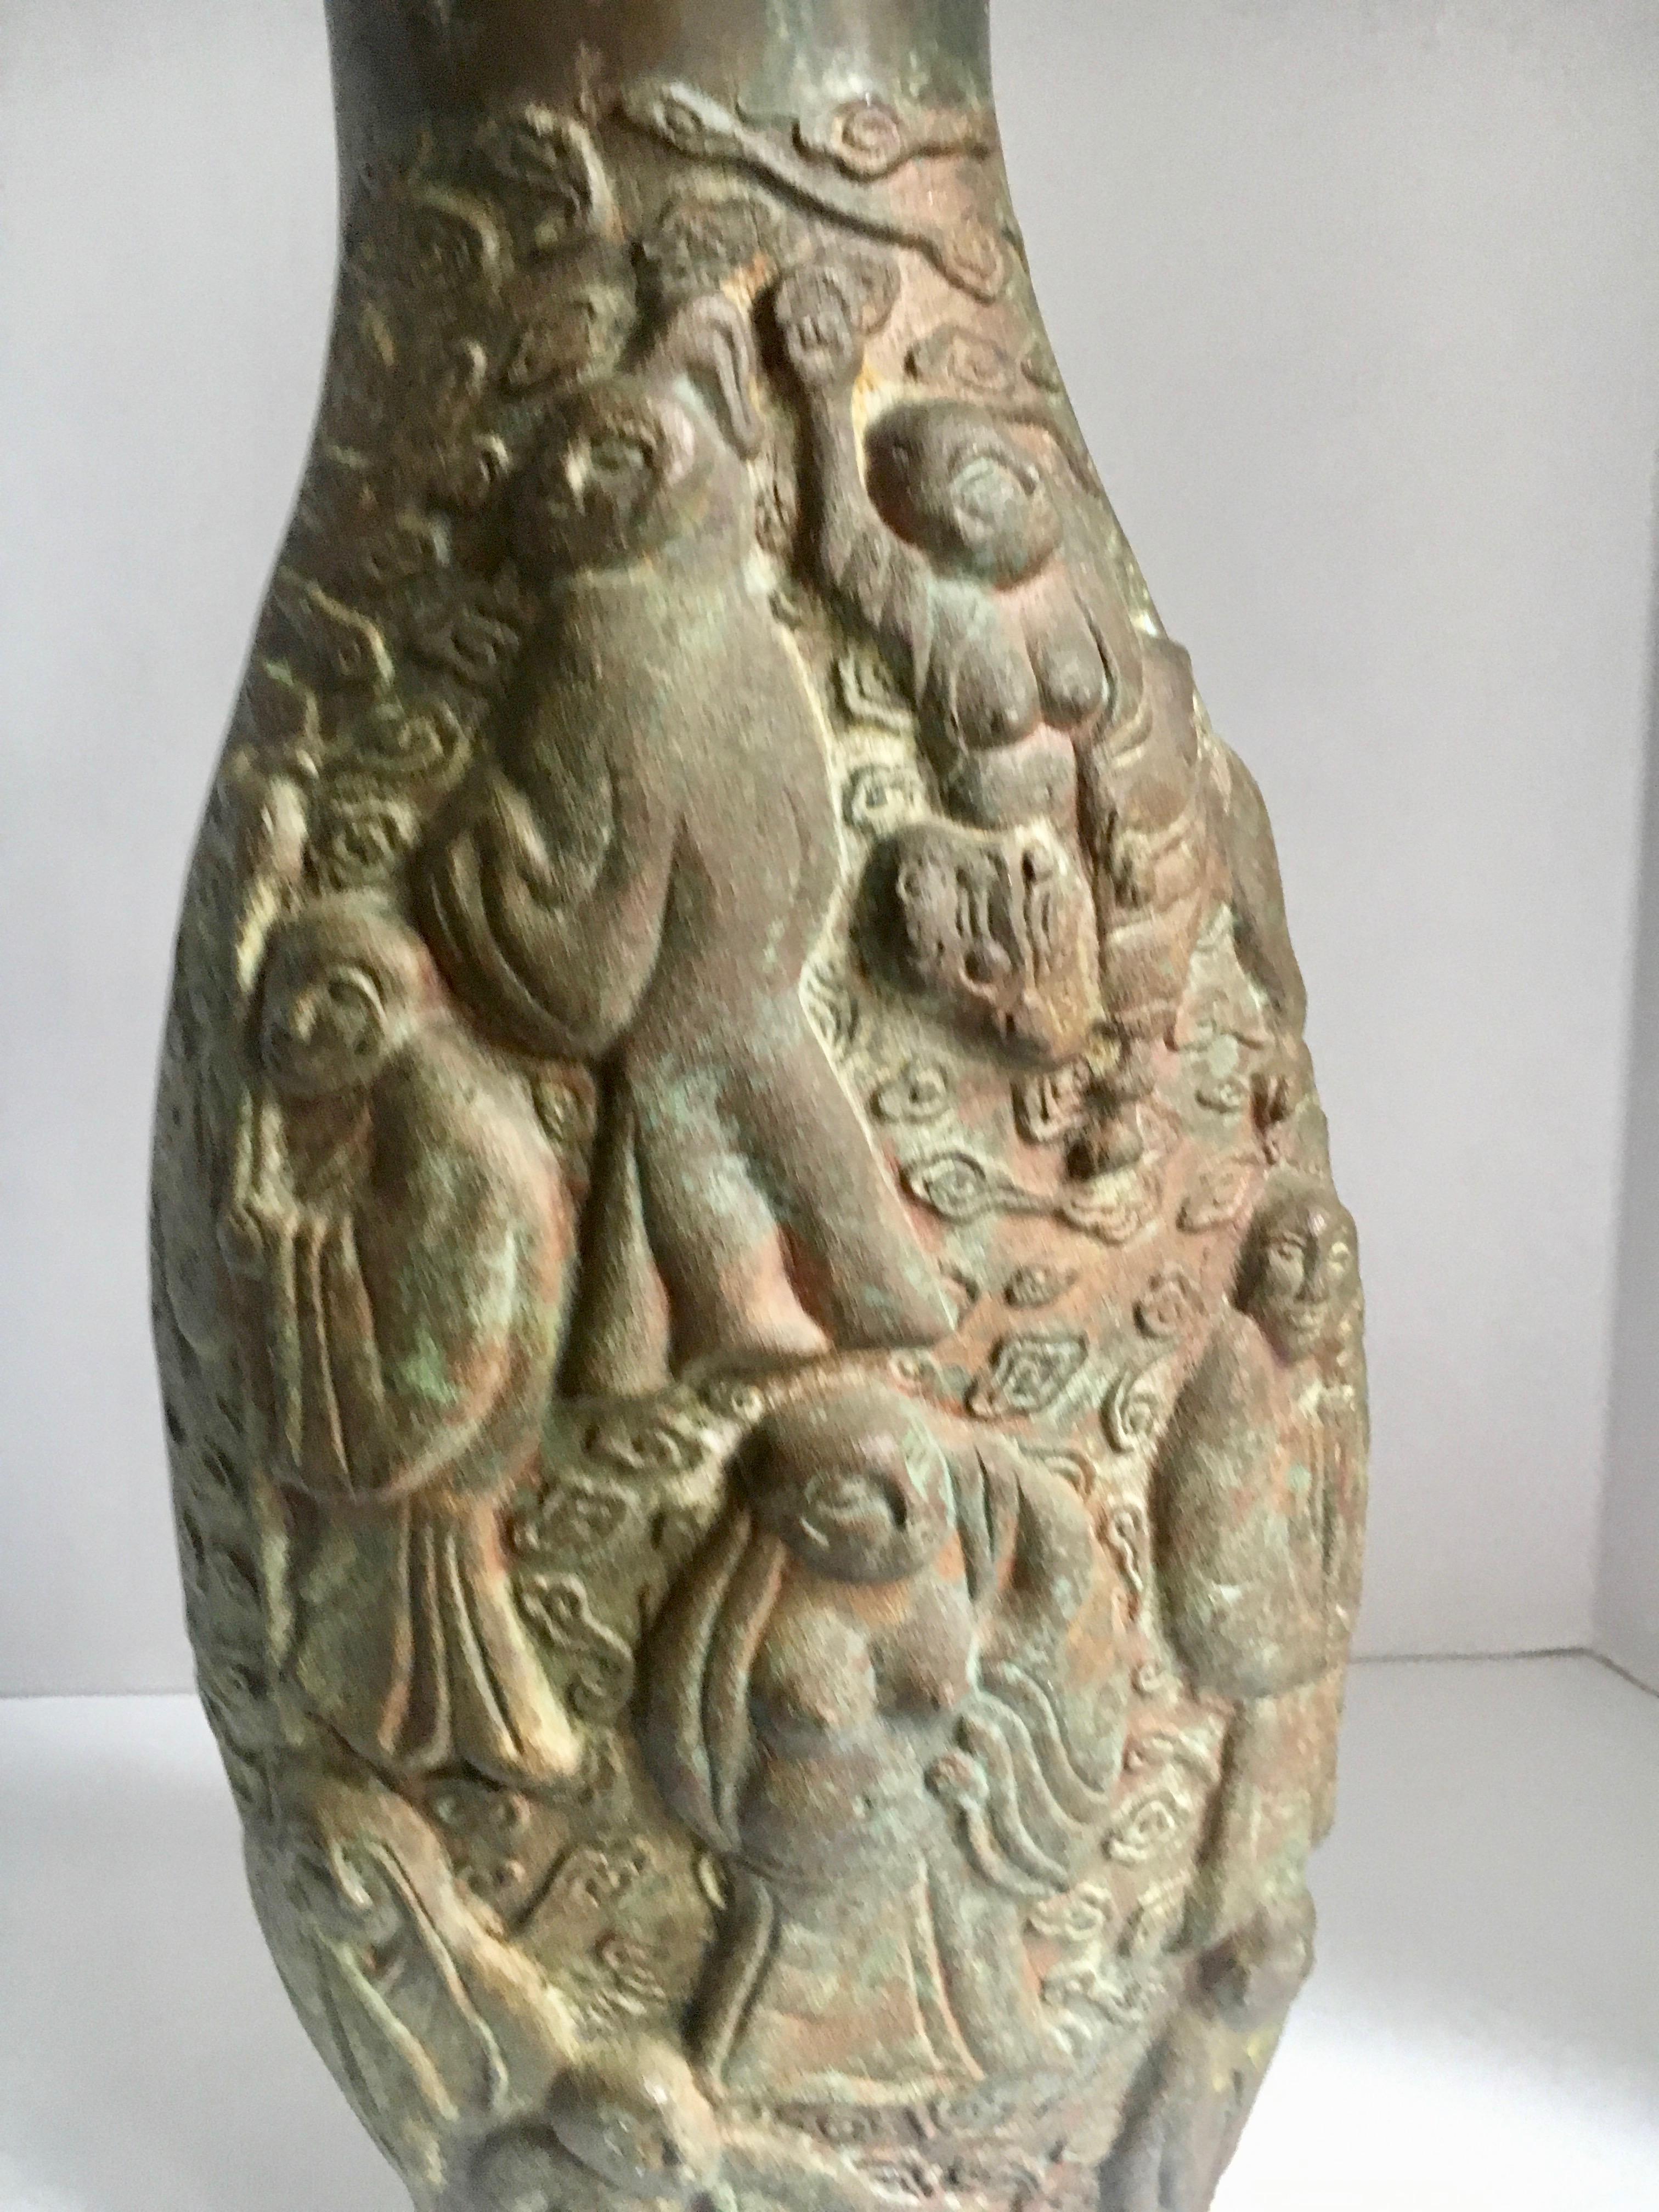 Chinesische Bronze-Vase mit 10 Figuren - Nicht sicher des Alters, aber funktioniert gut in jeder Umgebung und wasserdicht. Ein sehr schweres Stück (17 Pfund). Wunderschön gemacht, funktionell als Kunstwerk oder praktisch als beeindruckende Vase.